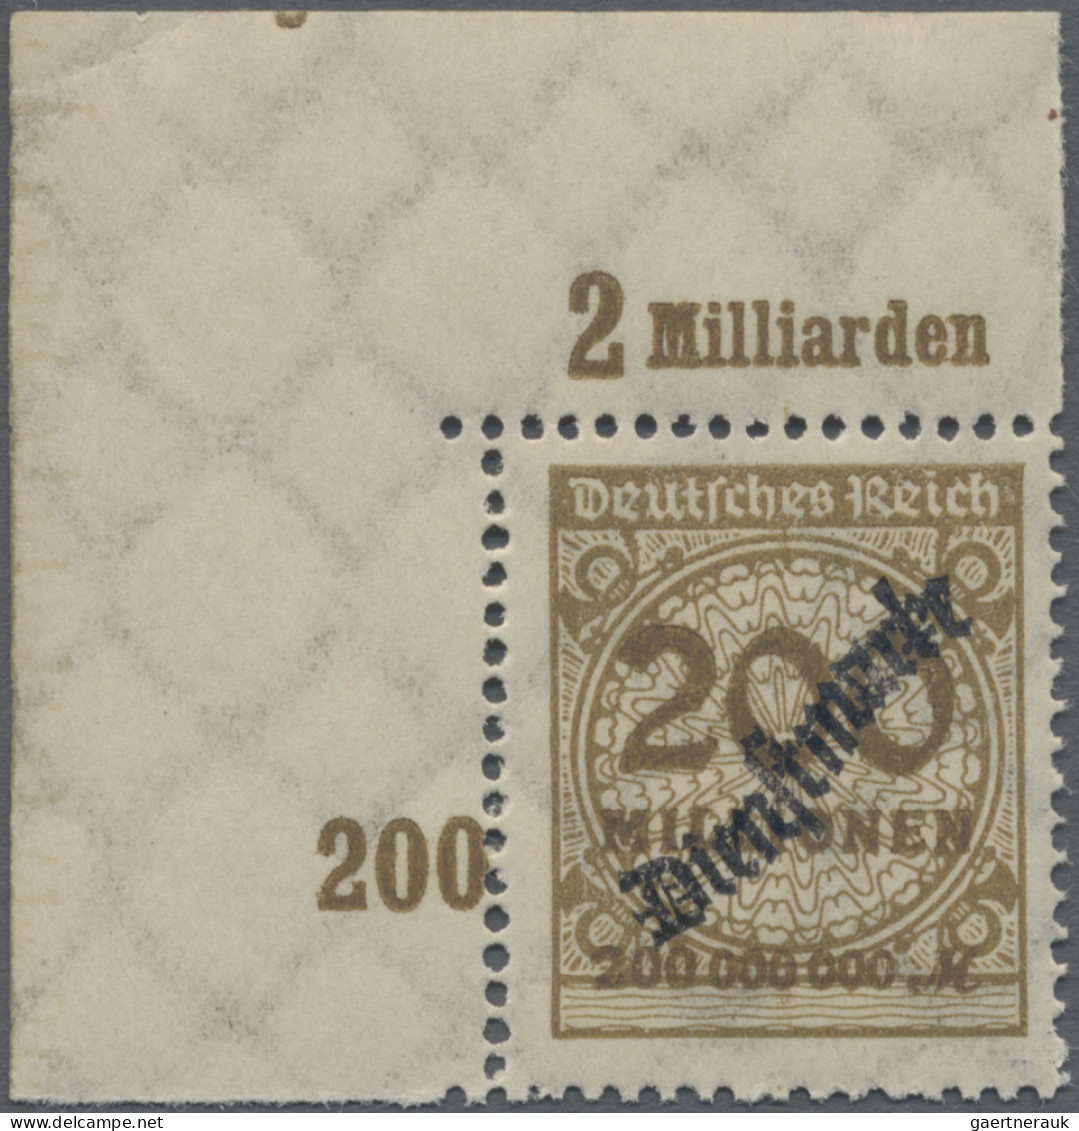 Deutsches Reich - Dienstmarken: 1923, Wertangabe Im Rosettenmuster, 200 Mio M In - Dienstmarken